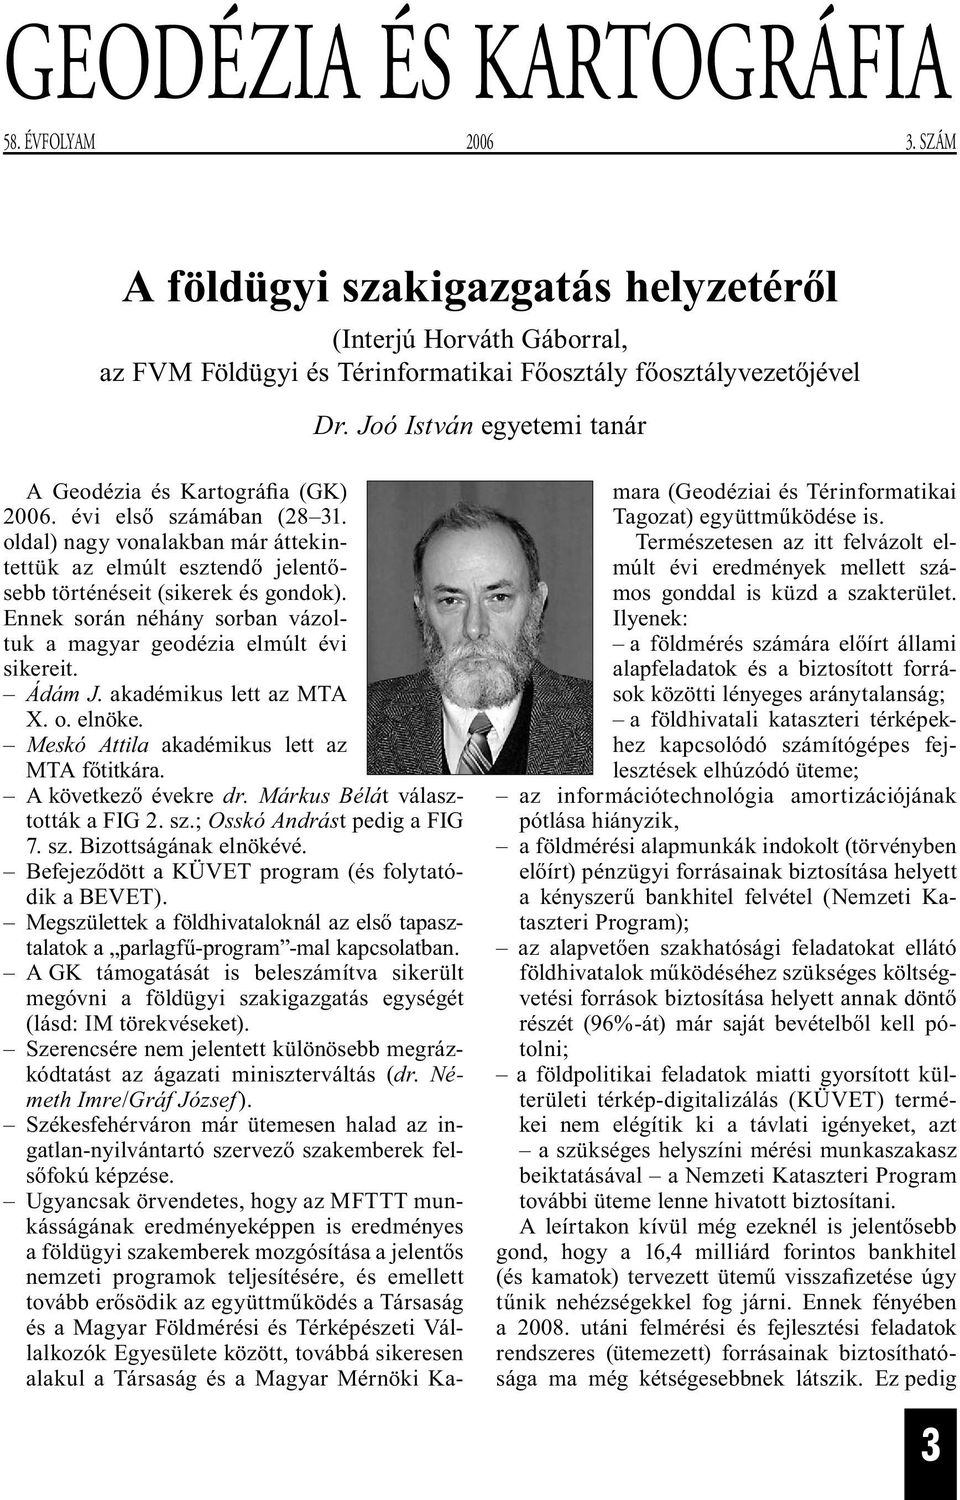 Ennek során néhány sorban vázoltuk a magyar geodézia elmúlt évi sikereit. Ádám J. akadémikus lett az MTA X. o. elnöke. Meskó Attila akadémikus lett az MTA főtitkára. A következő évekre dr.